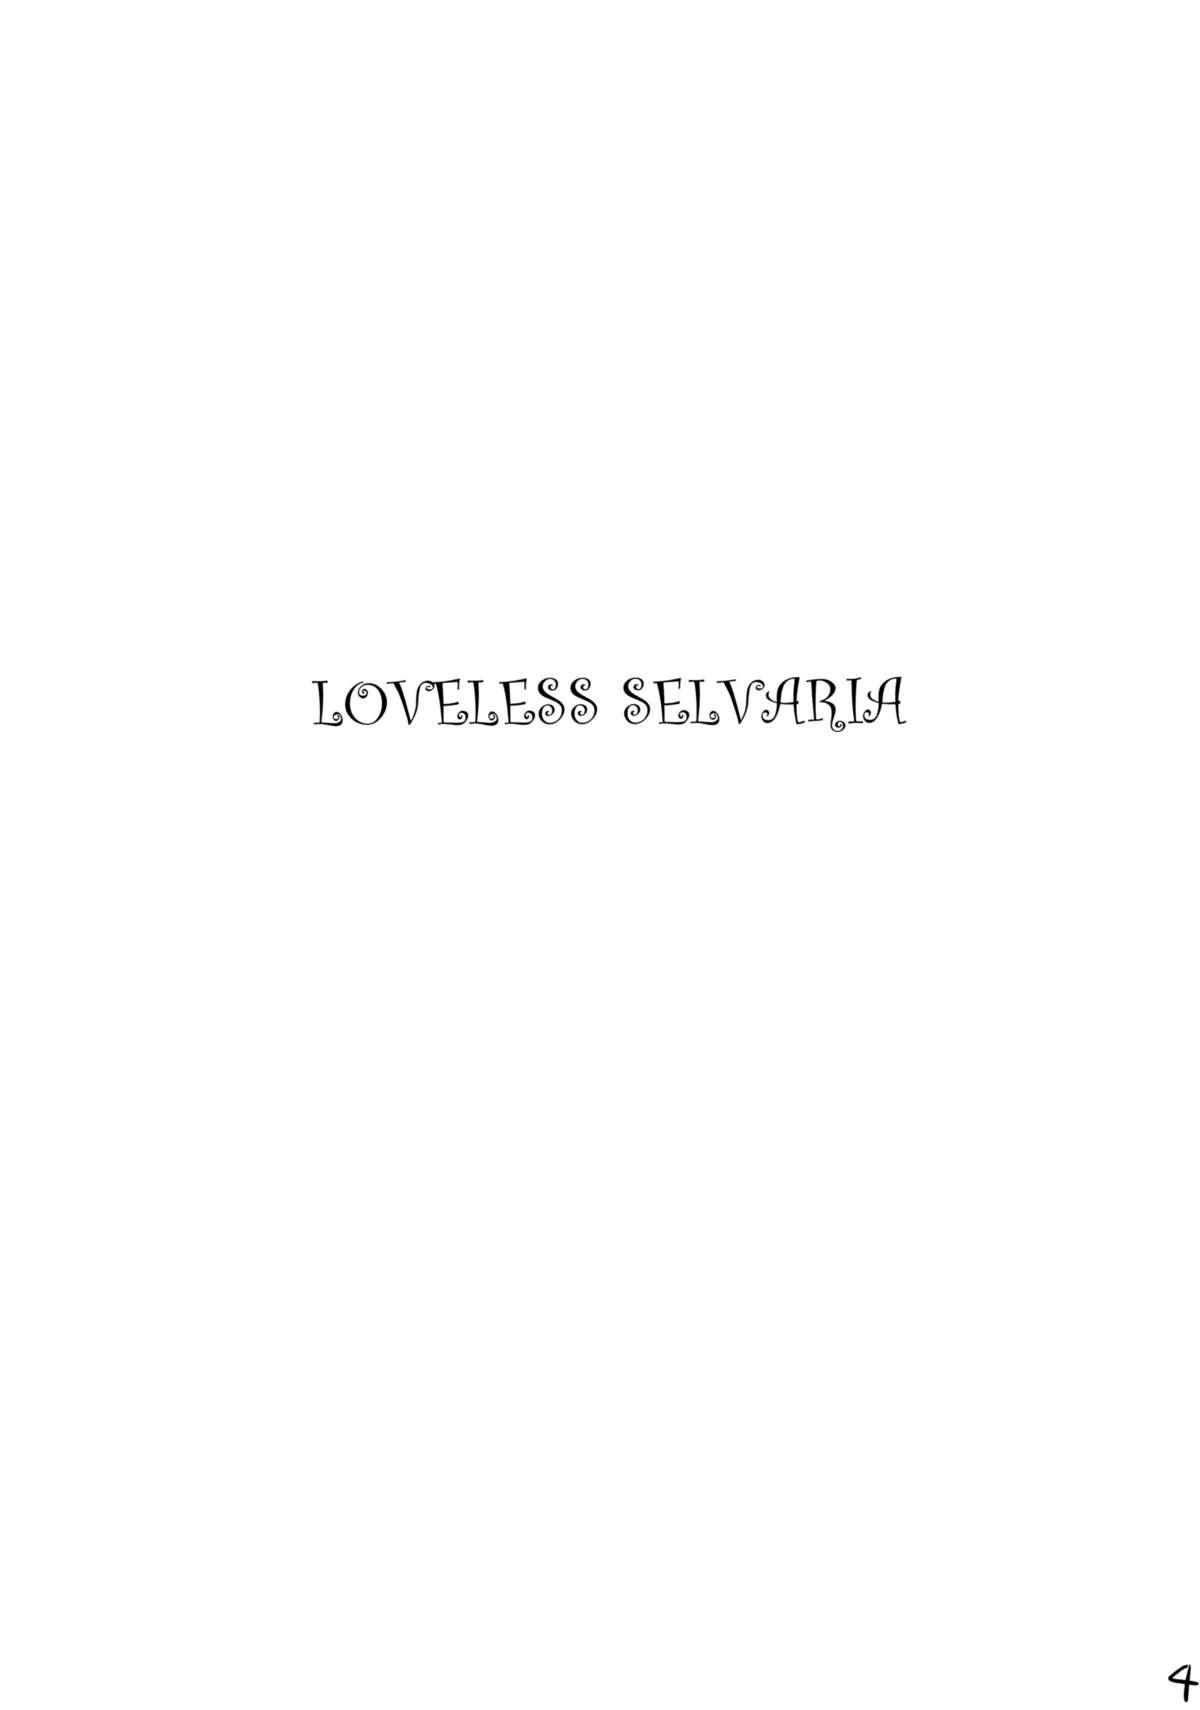 Sub Loveless Selvaria - Valkyria chronicles Tetona - Page 3